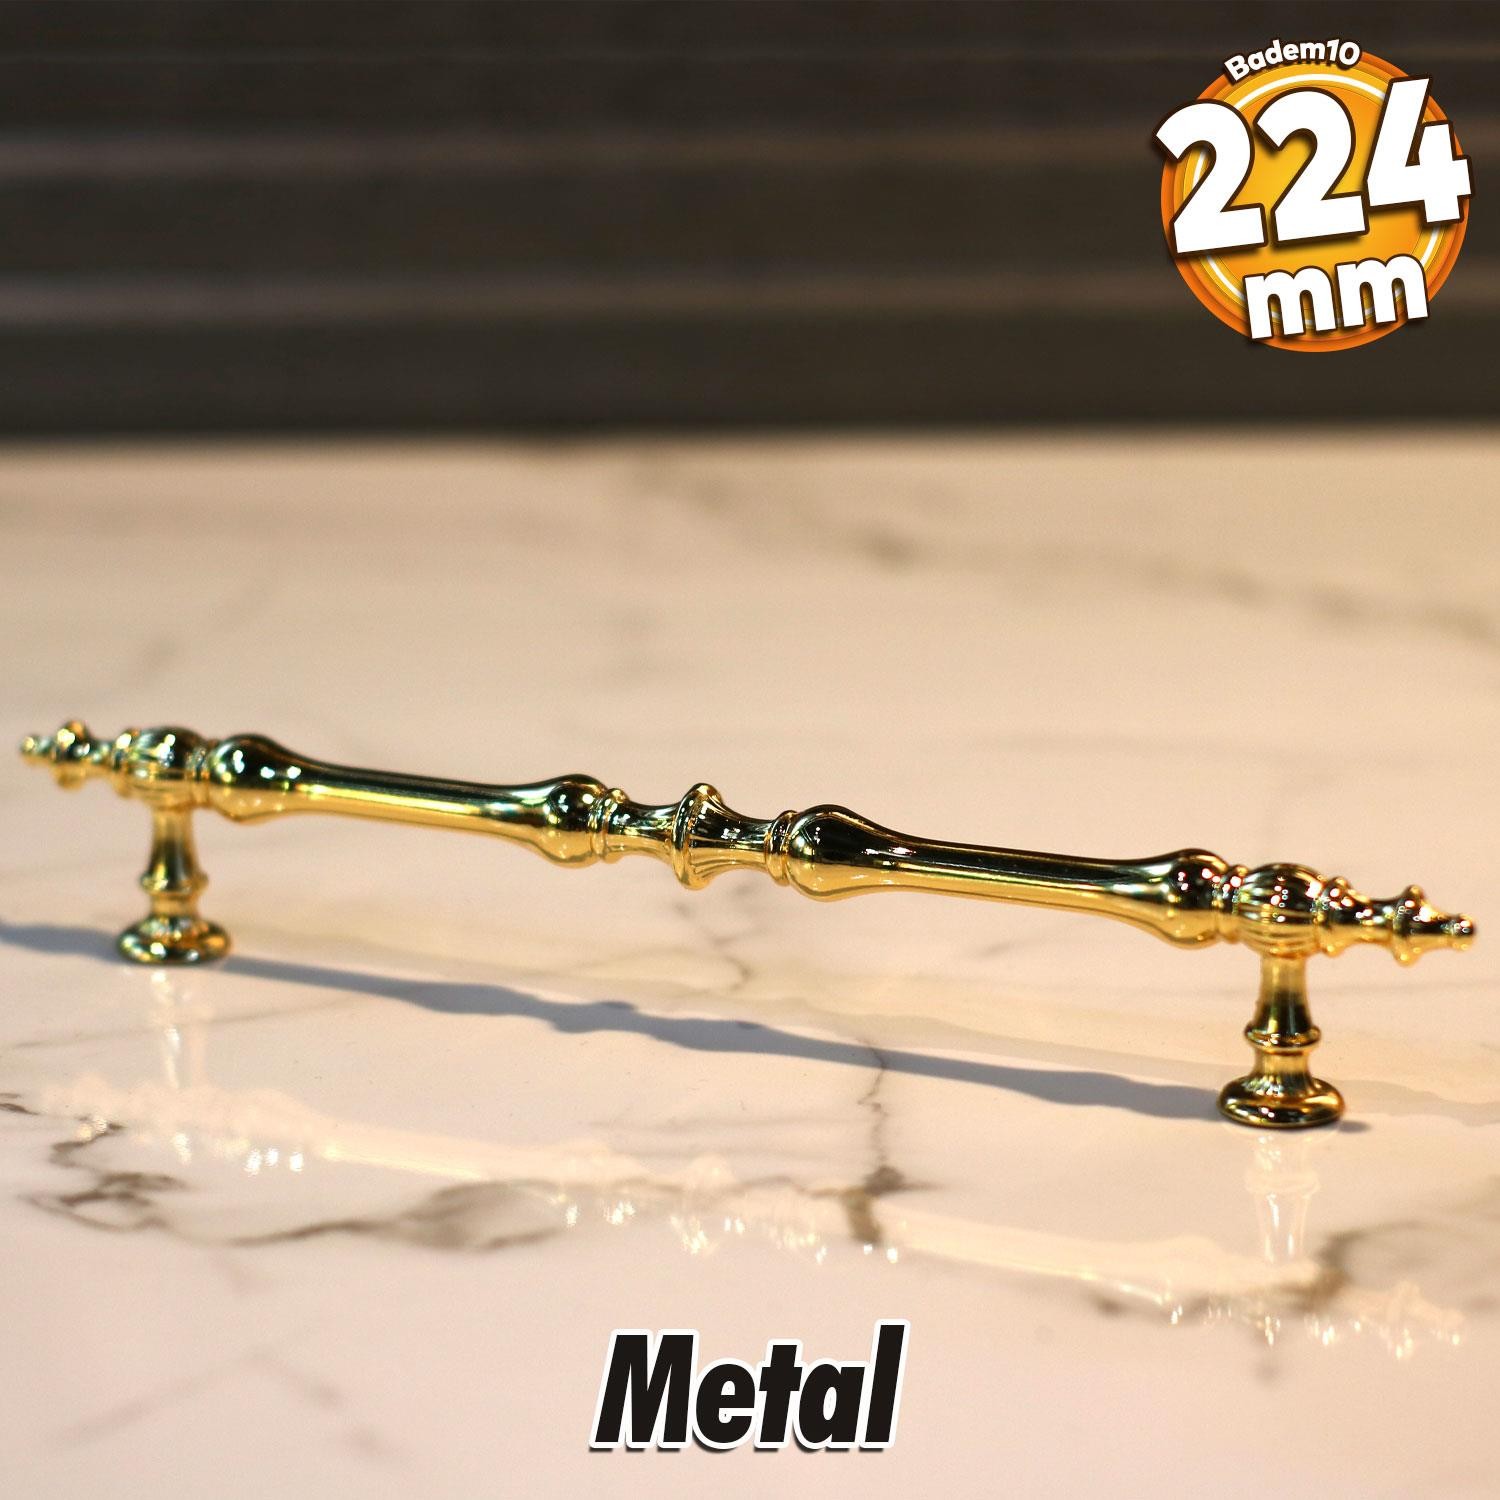 Şehzade Kulp Mobilya Mutfak Dolabı Çekmece Dolap Kulpları Kapak Kulpu Kulbu Gold 224 mm Metal